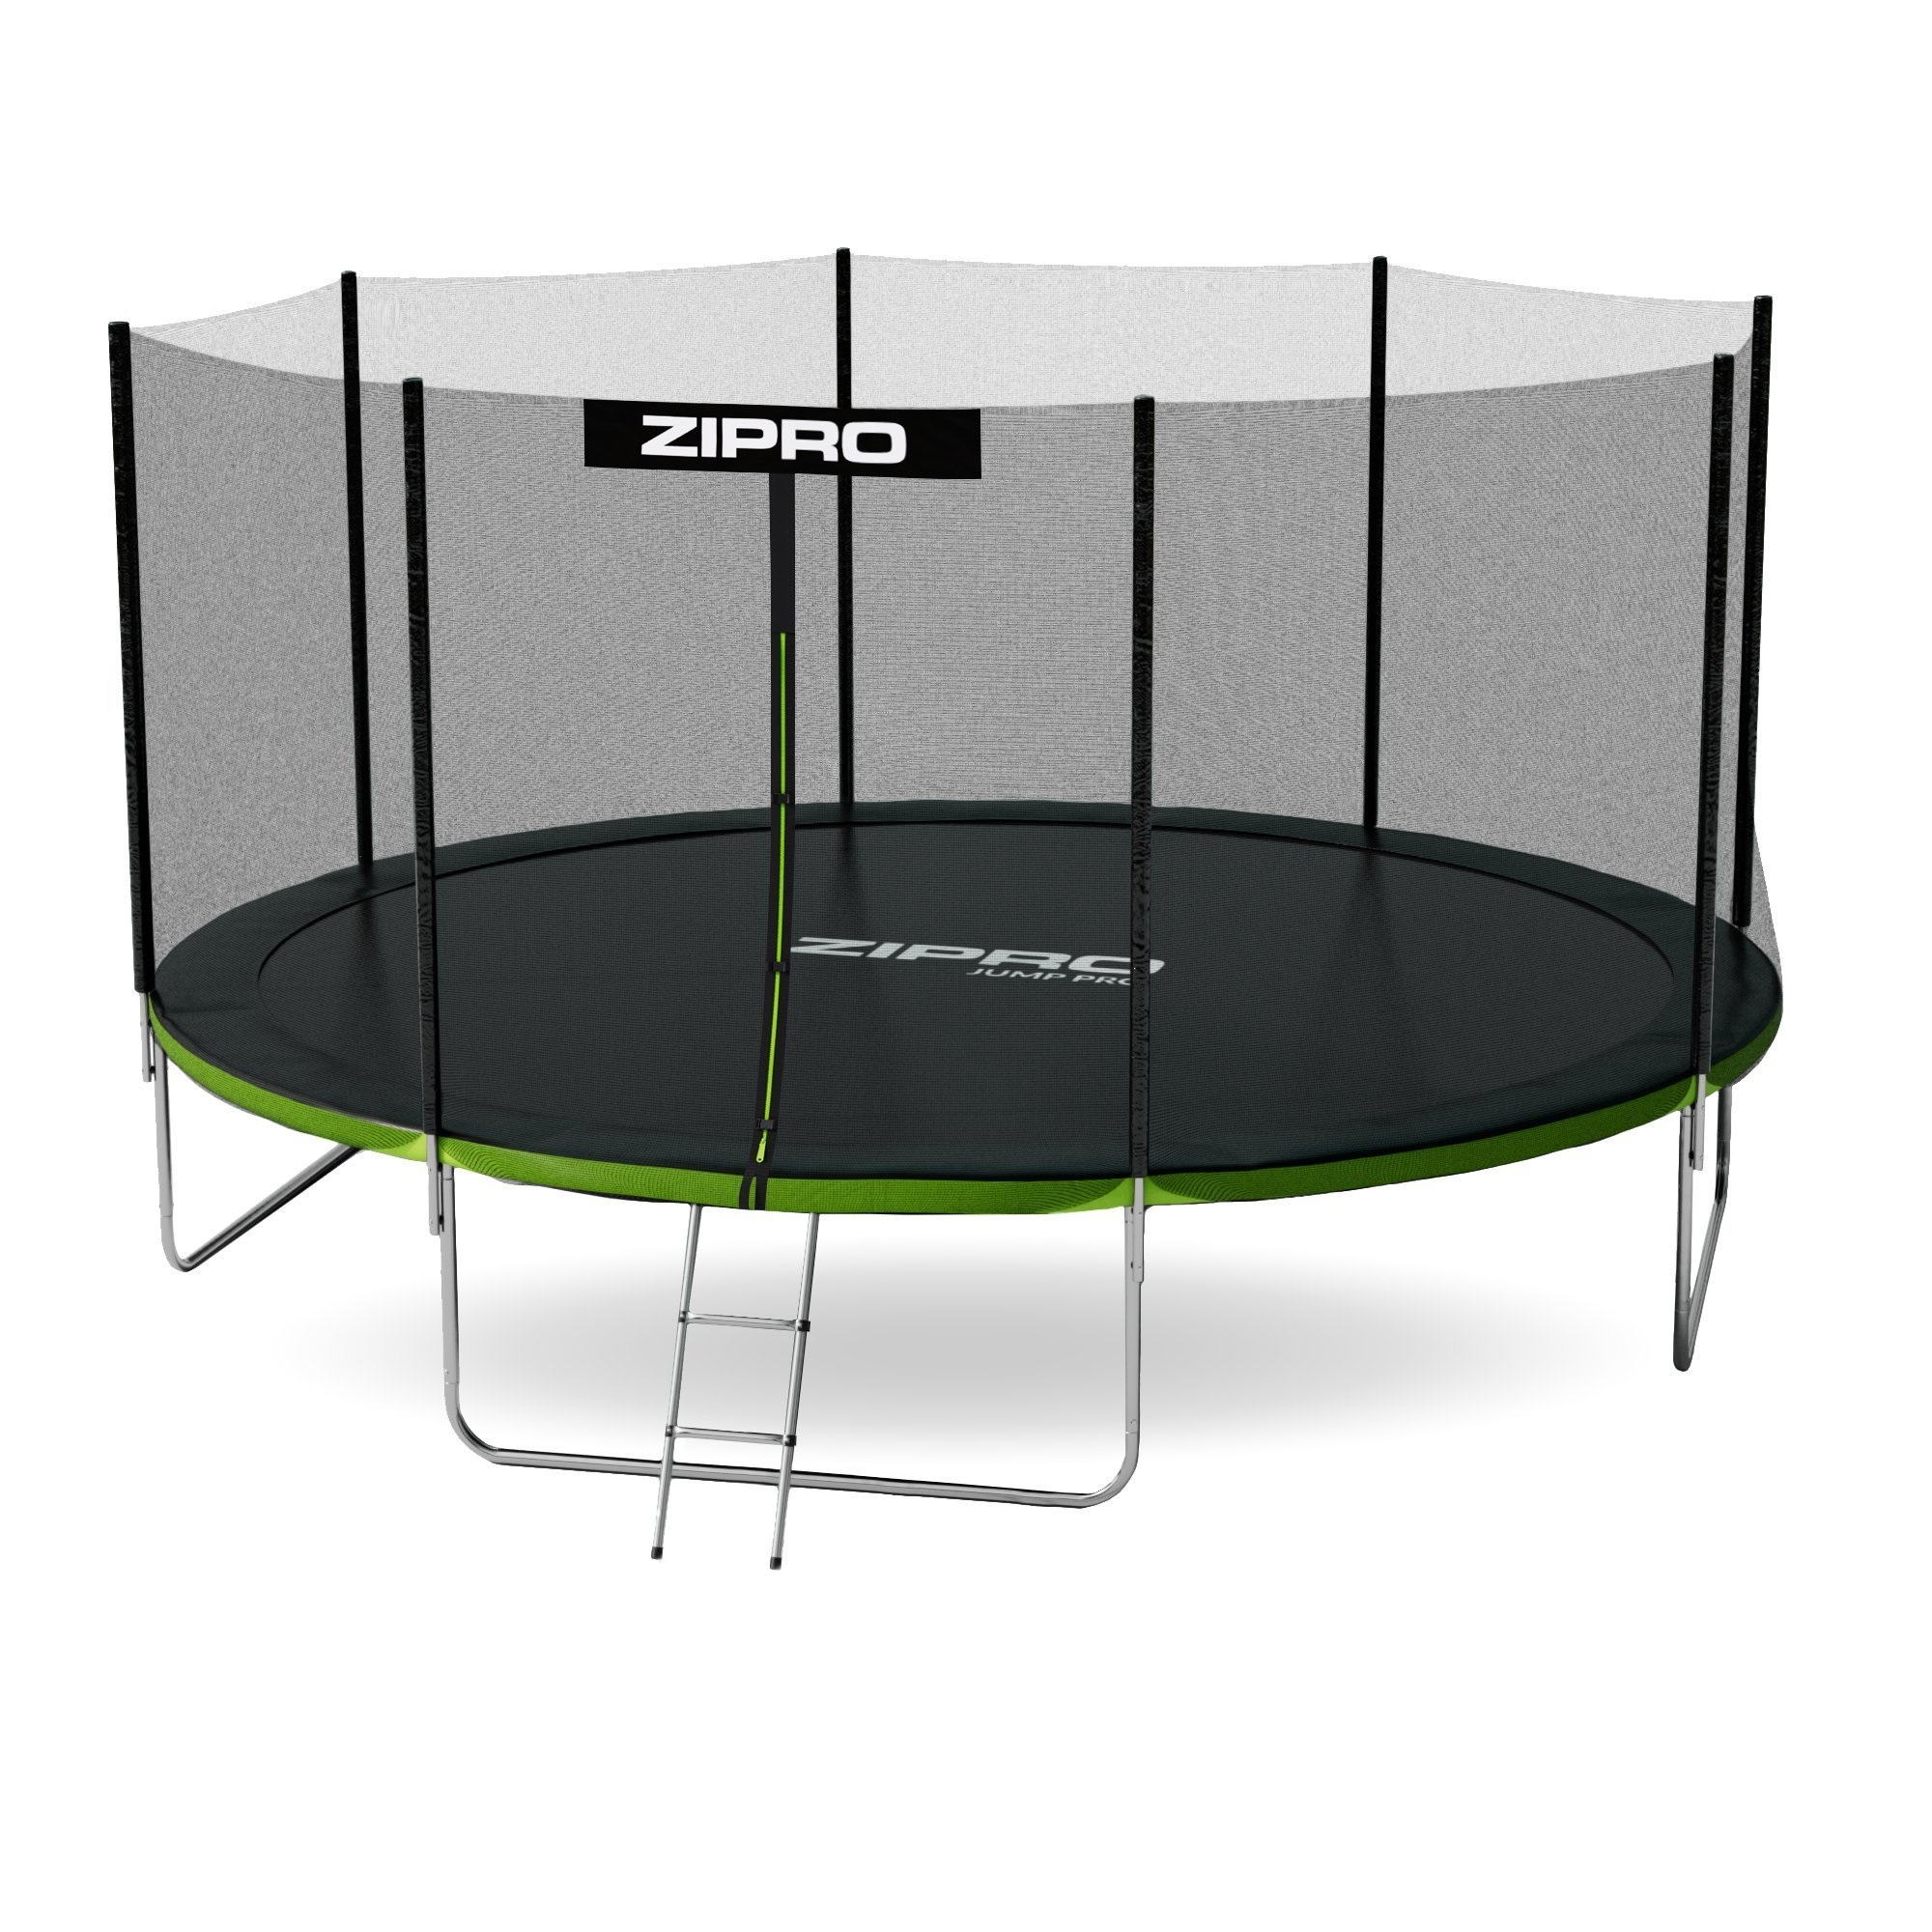 ZIPRO Jump Pro 14FT 435cm schwarz Ergometer